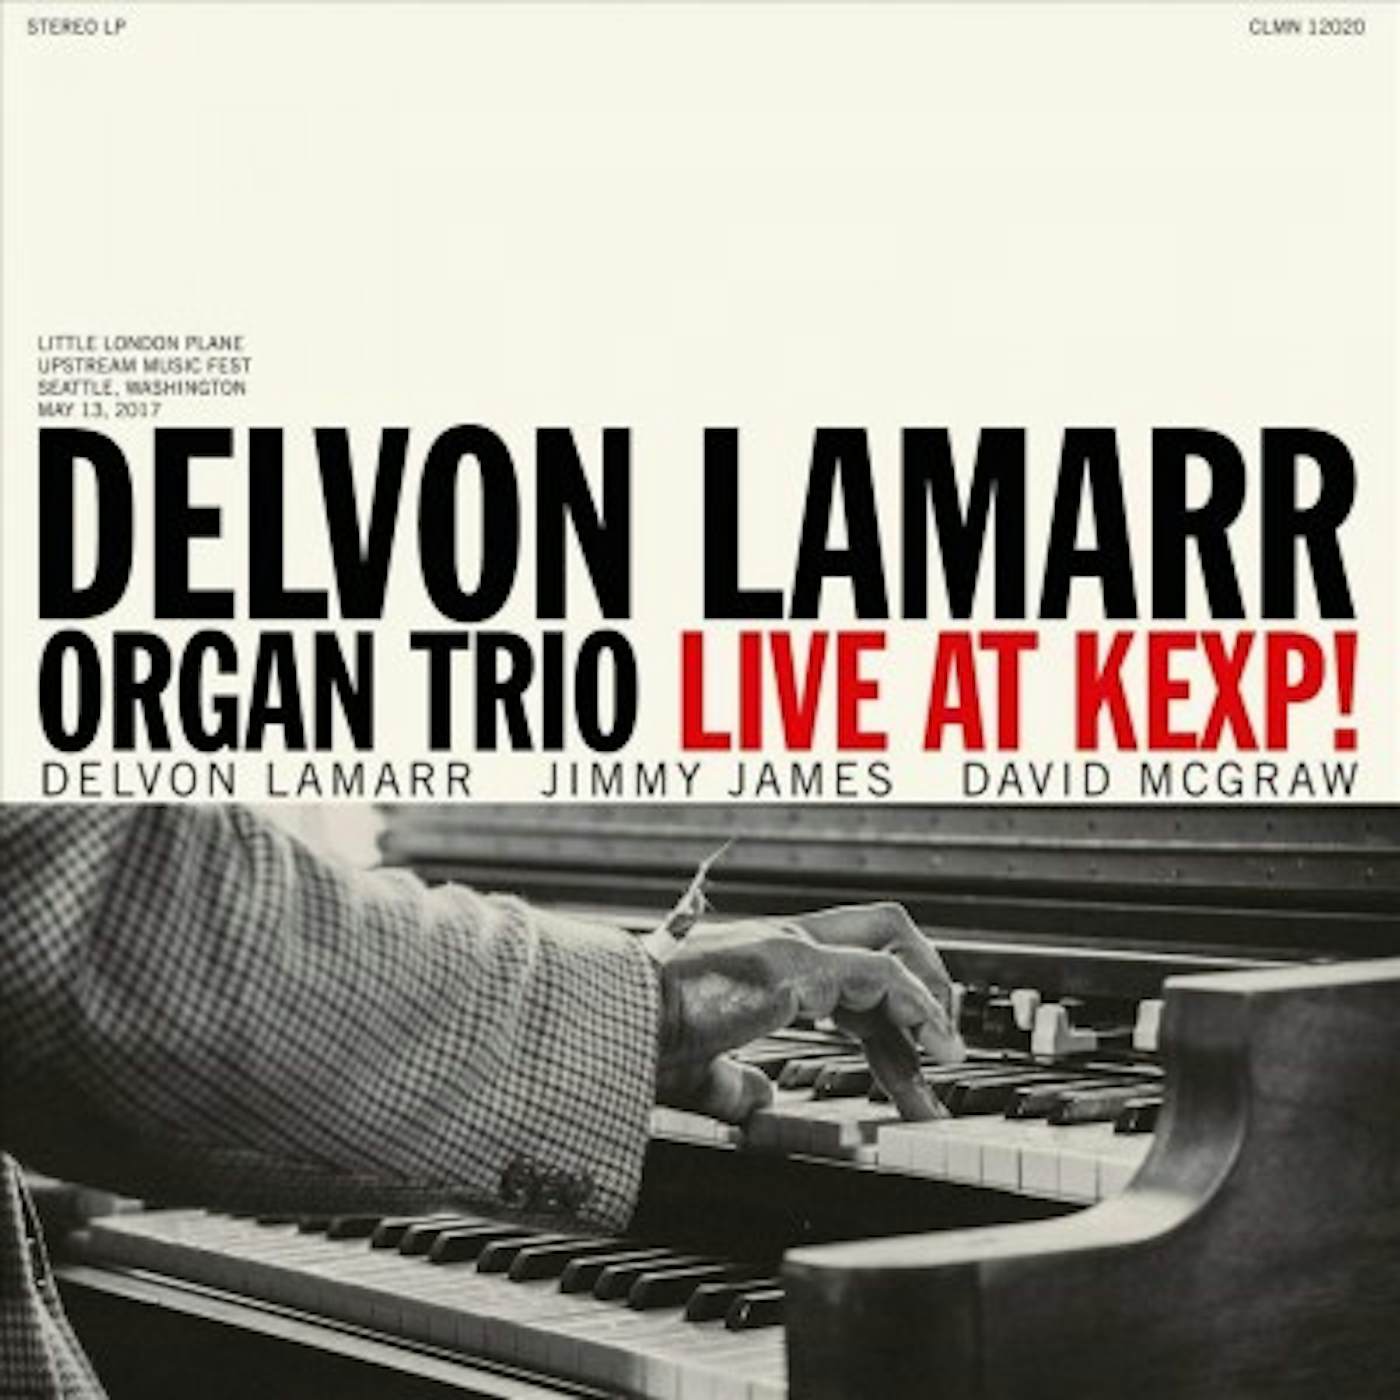 Delvon Lamarr Organ Trio Live at KEXP! Vinyl Record